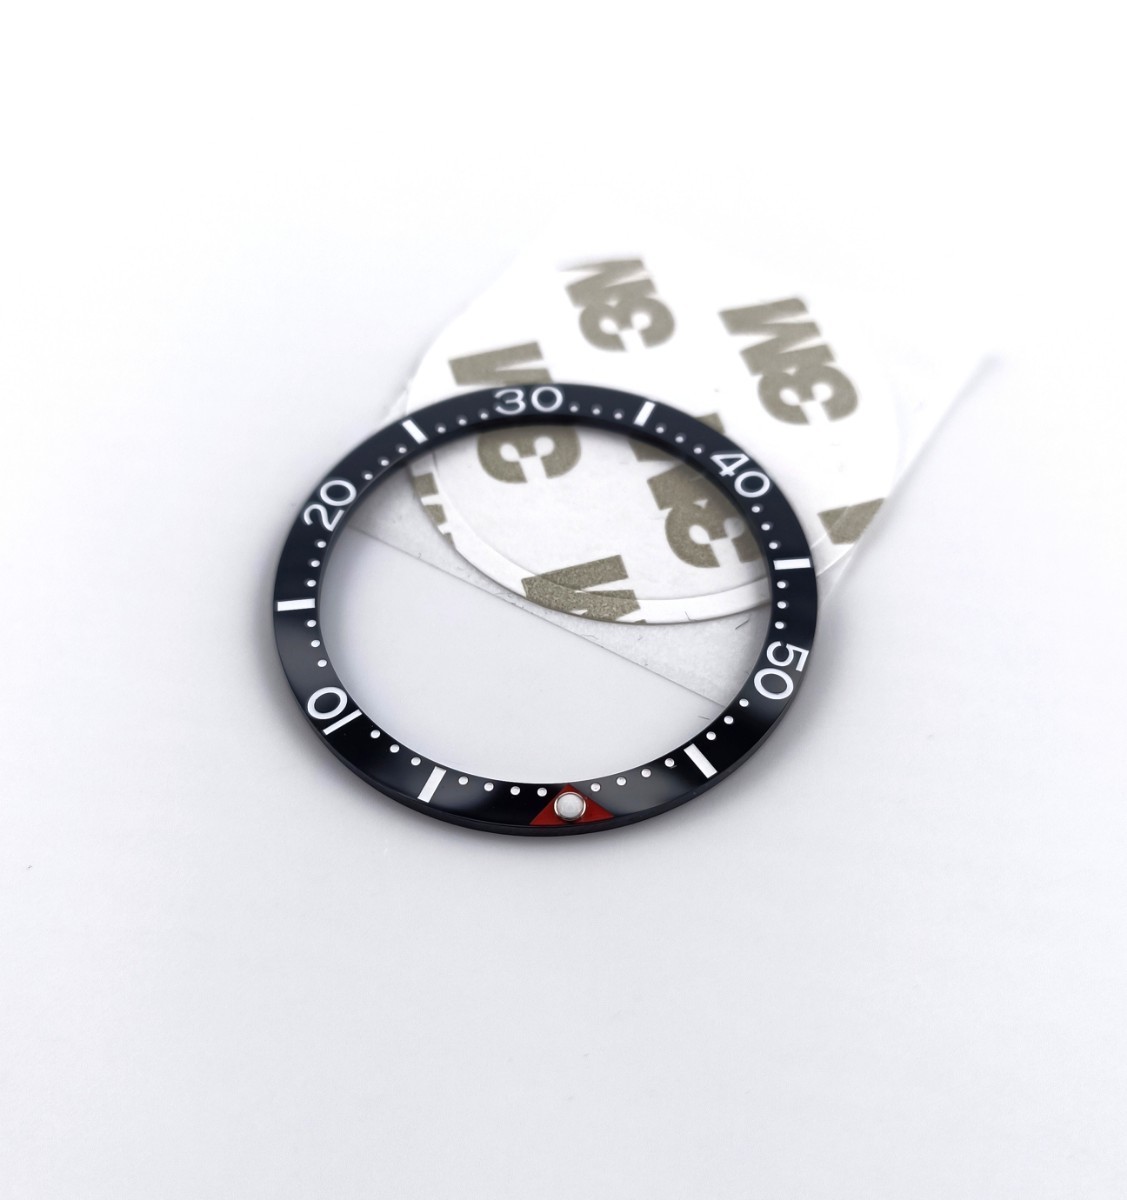  наручные часы ремонт для замены фирма внешний товар красный vruminas отметка керамика оправа вставка черный [ соответствует ] Seiko дайвер SKX007/009 70,63 и т.п. 